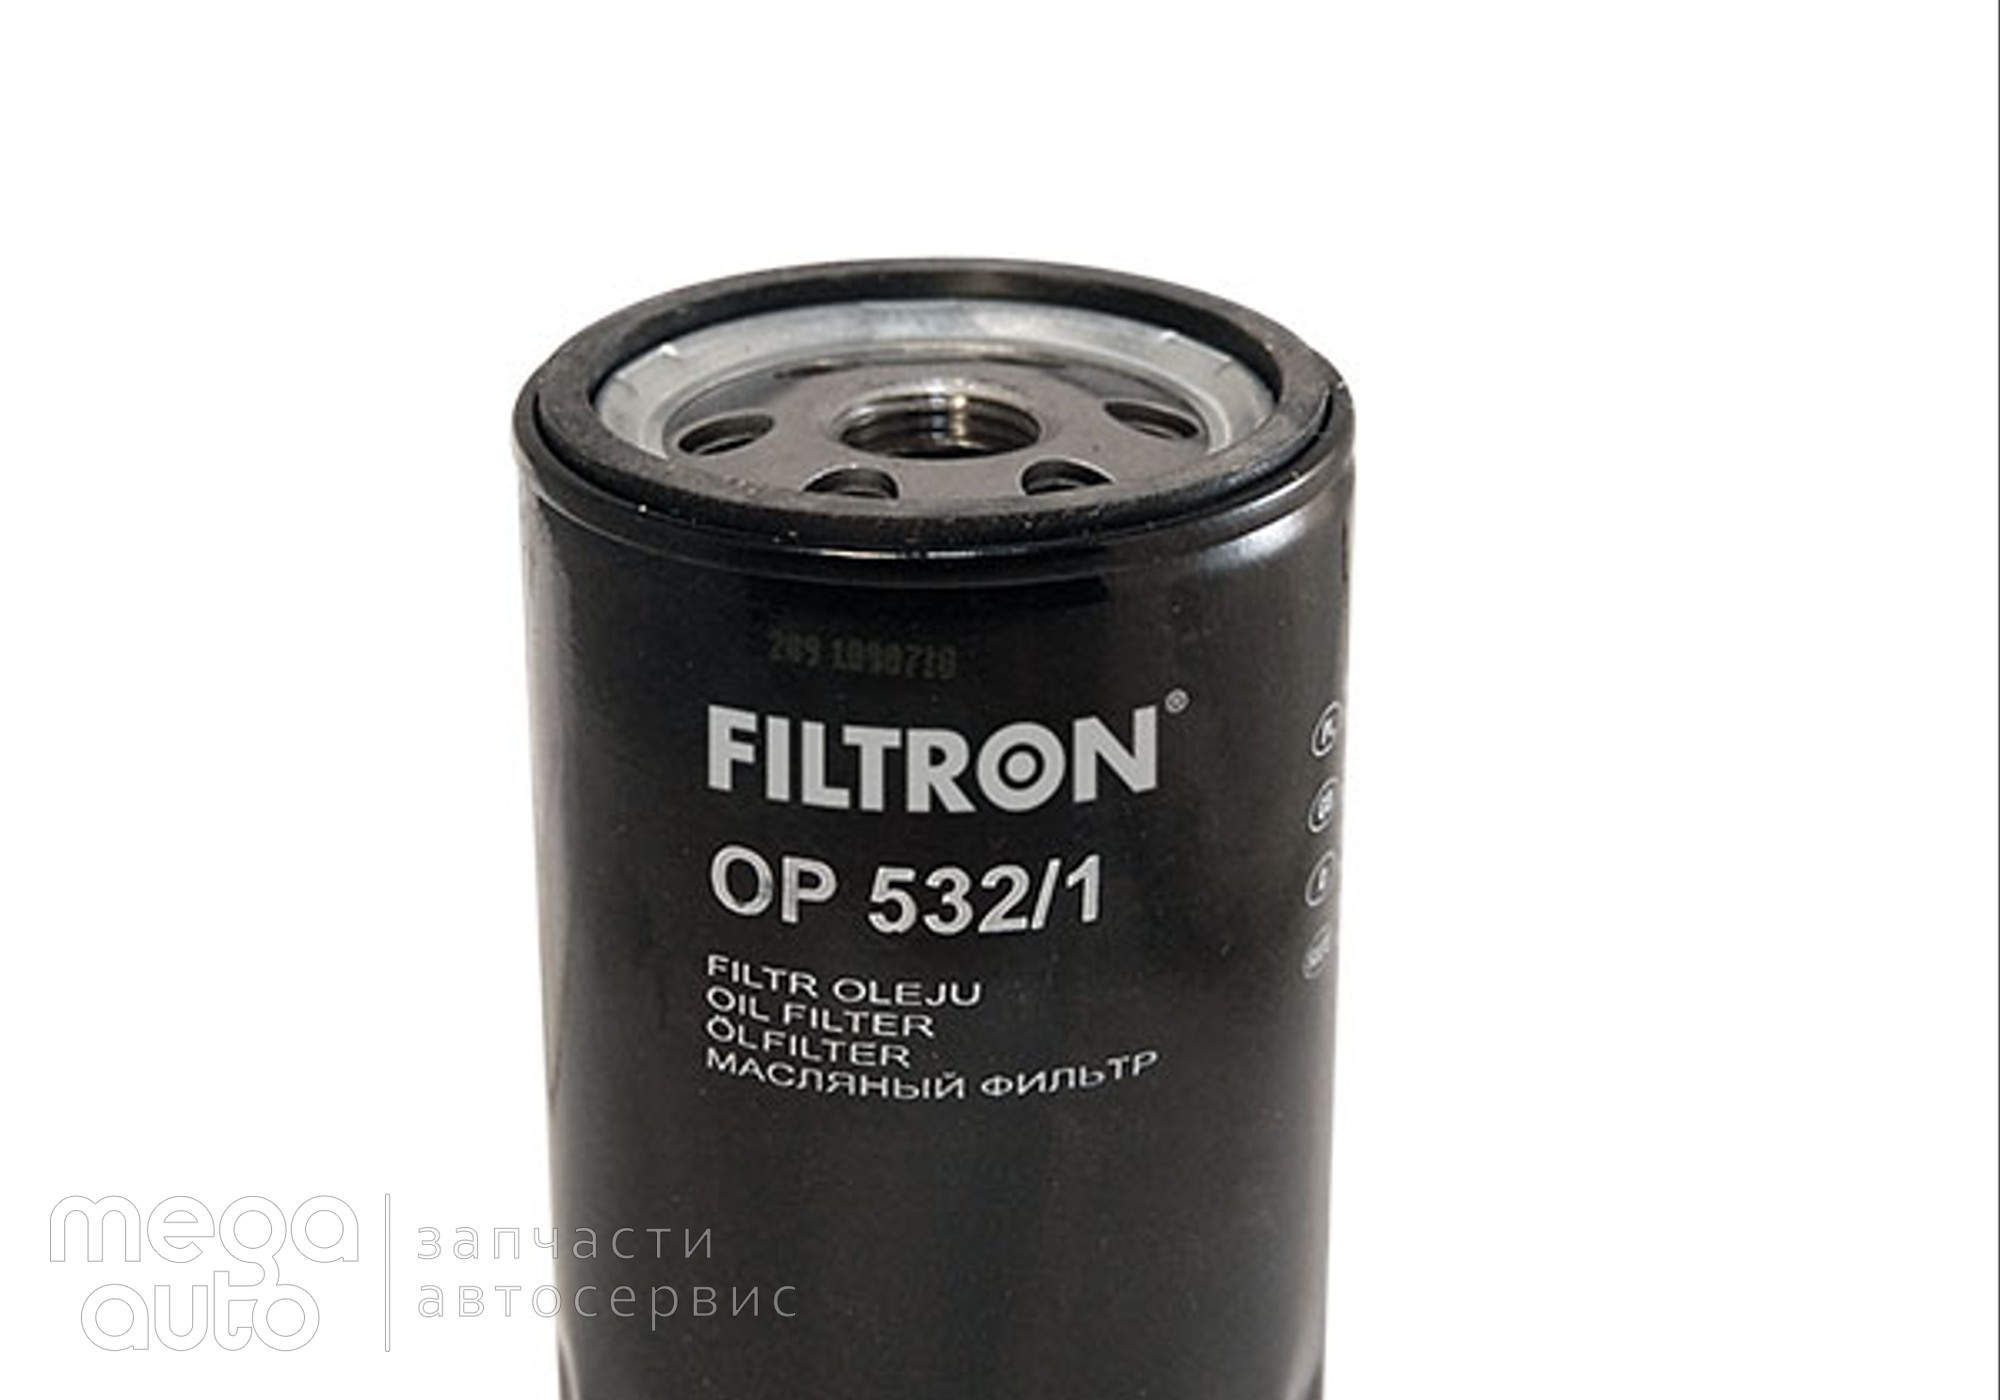 96565412 Масляный фильтр форд мондео, эскорт(Filtron) для Fiat Regata